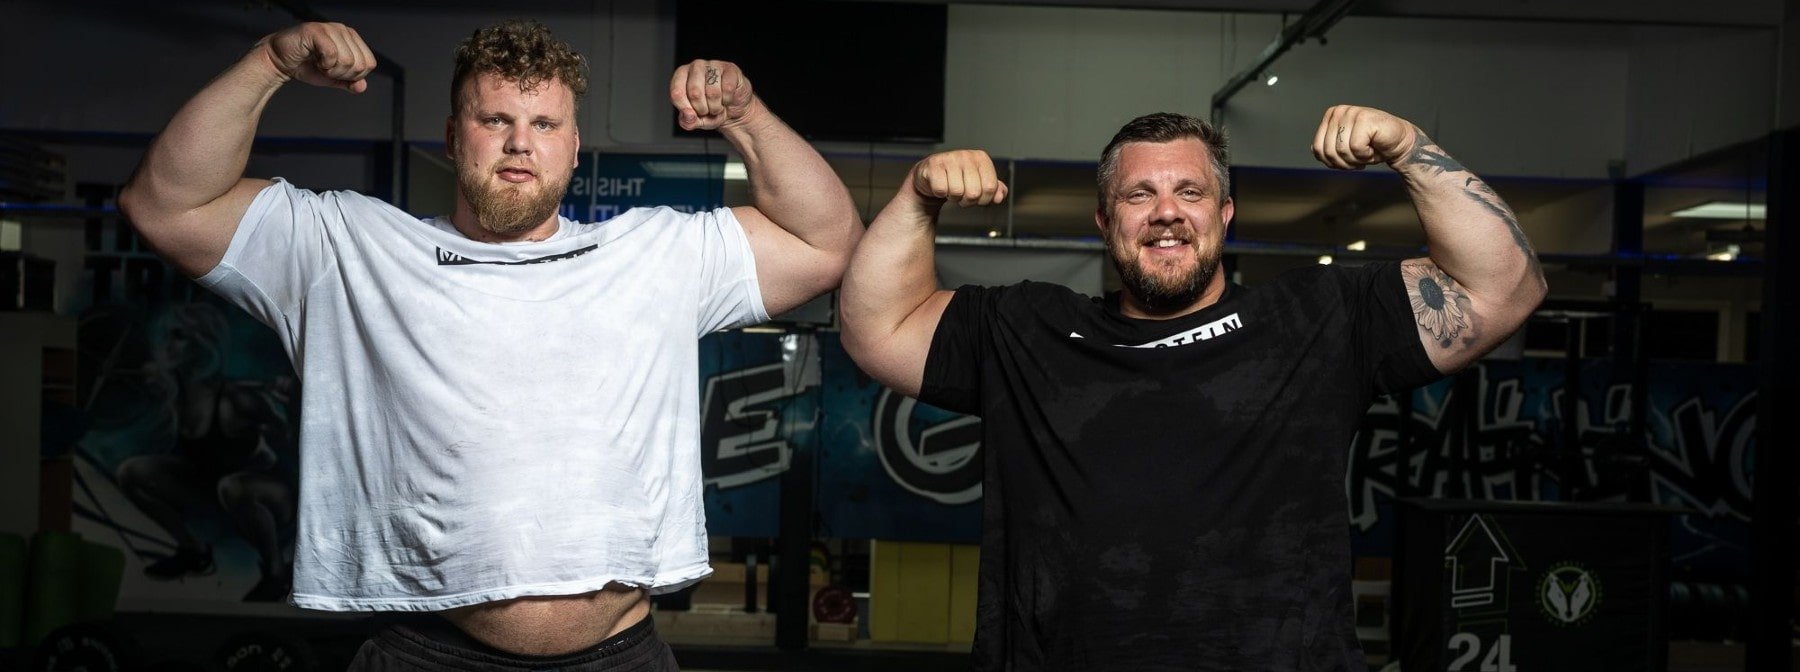 Der stärkste Mann der Welt teilt seine Workout-Routine zum Erreichen einer 220kg Kniebeuge